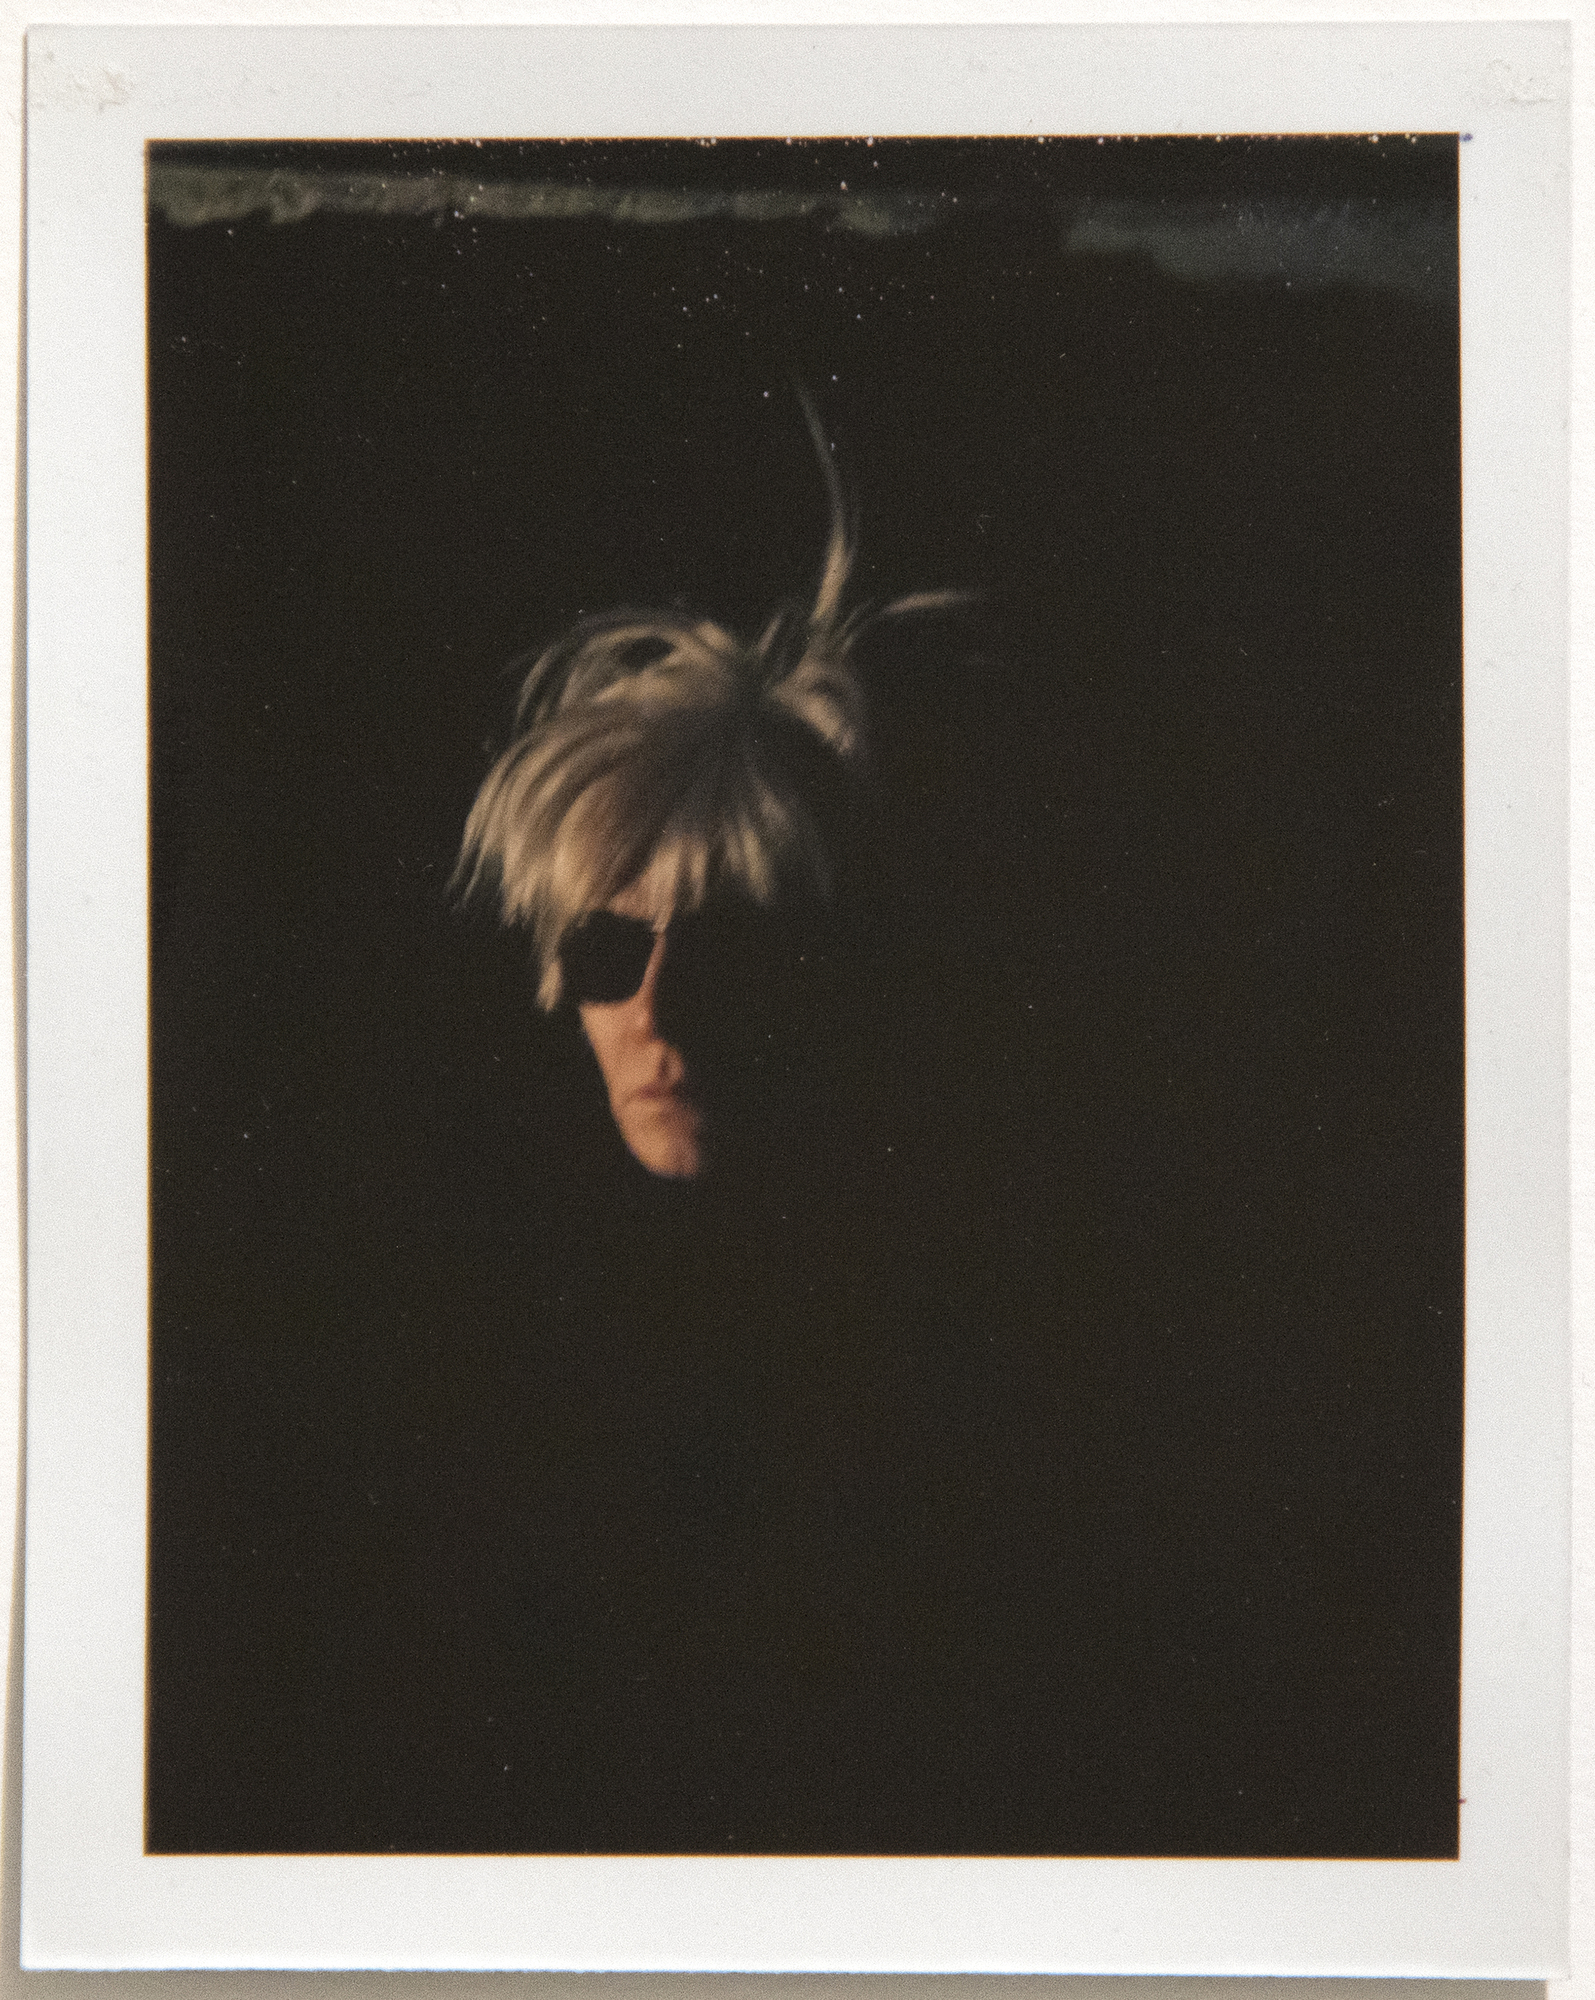 ANDY WARHOL - Autorretrato Warhol (Peluca de miedo) - Polaroid, Polacolor - 4 1/4 x 3 1/4 in.